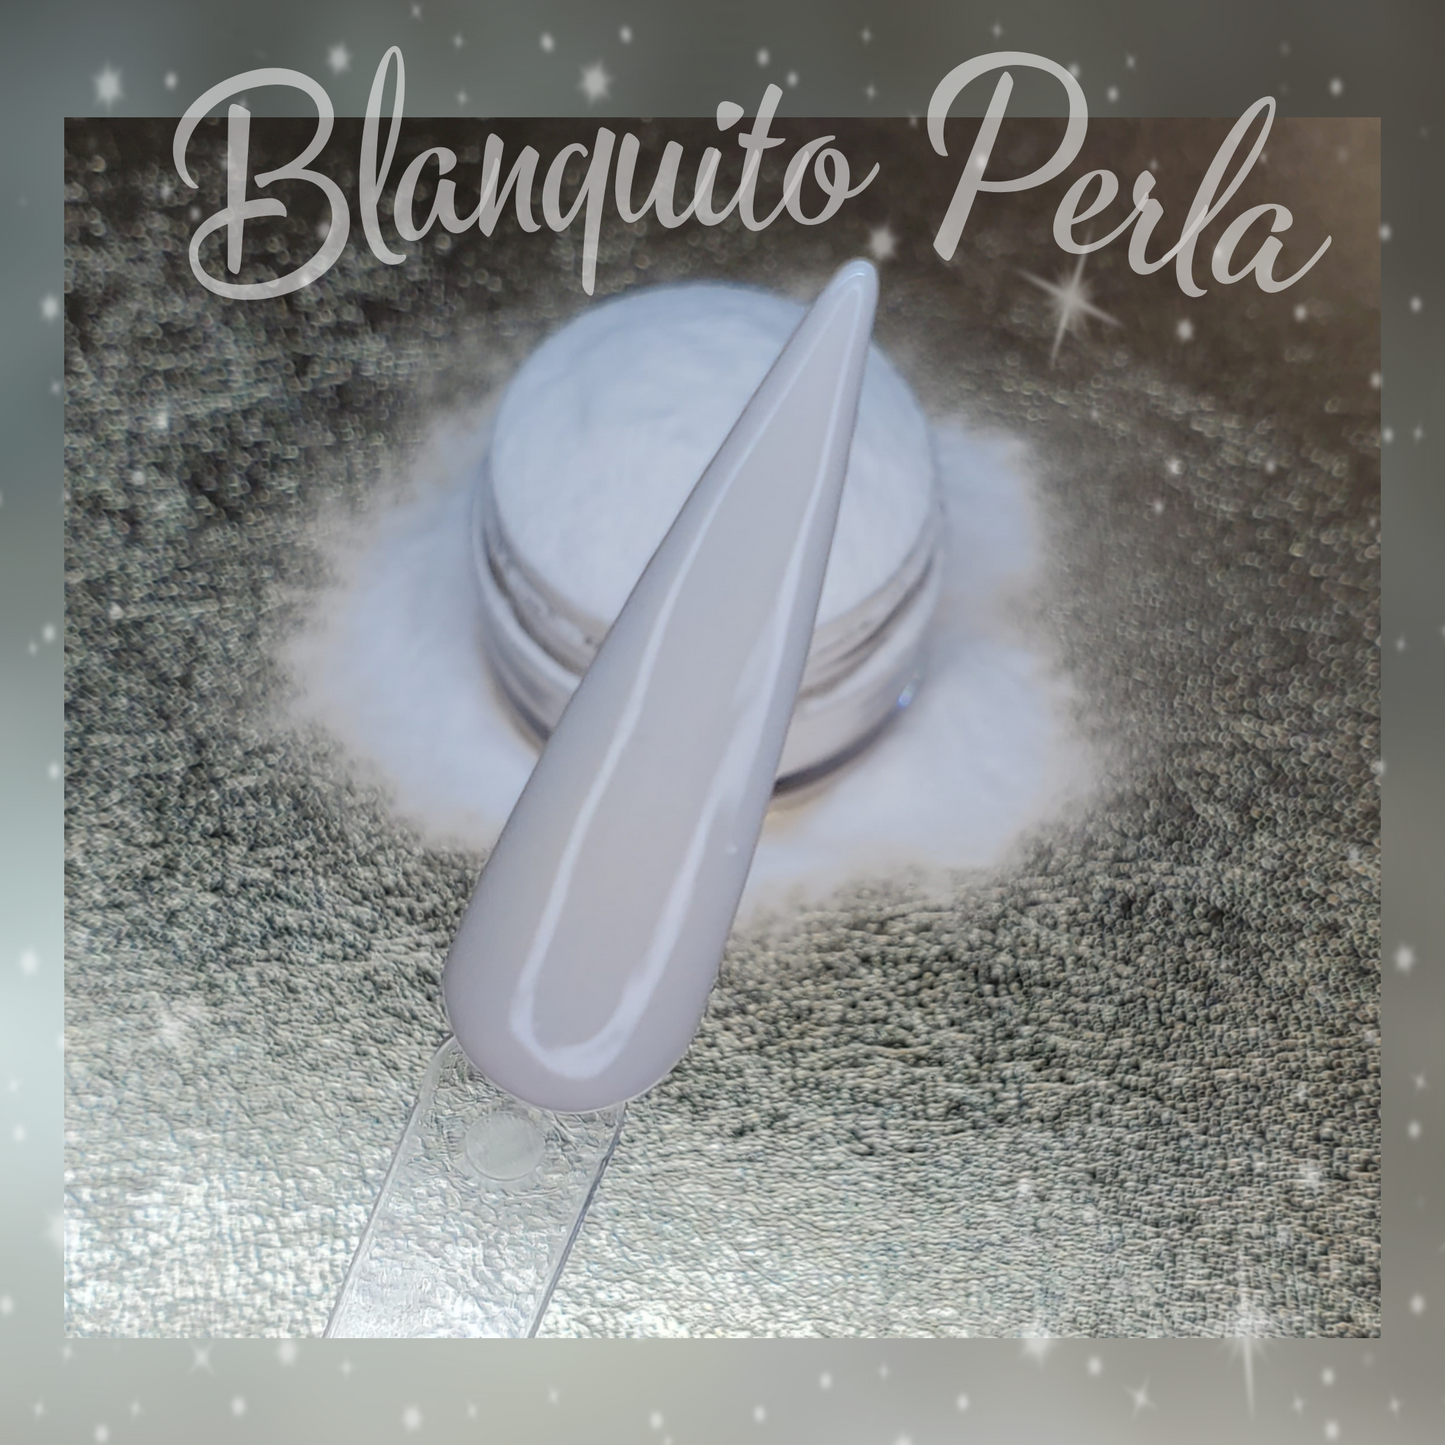 Blanquito Perla